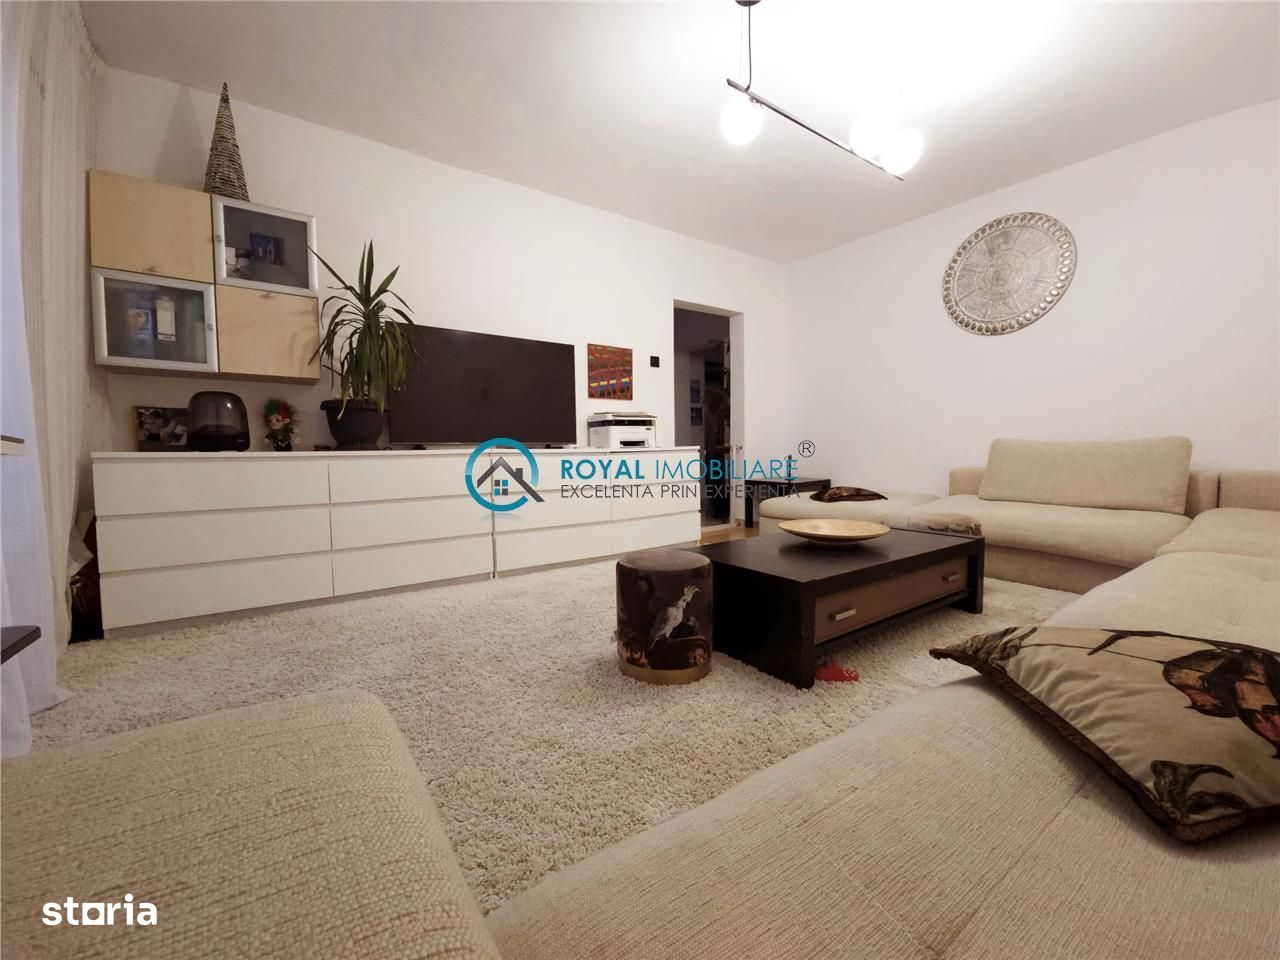 Royal Imobiliare - Vanzare Apartament 3 Camere Zona Cantacuzino